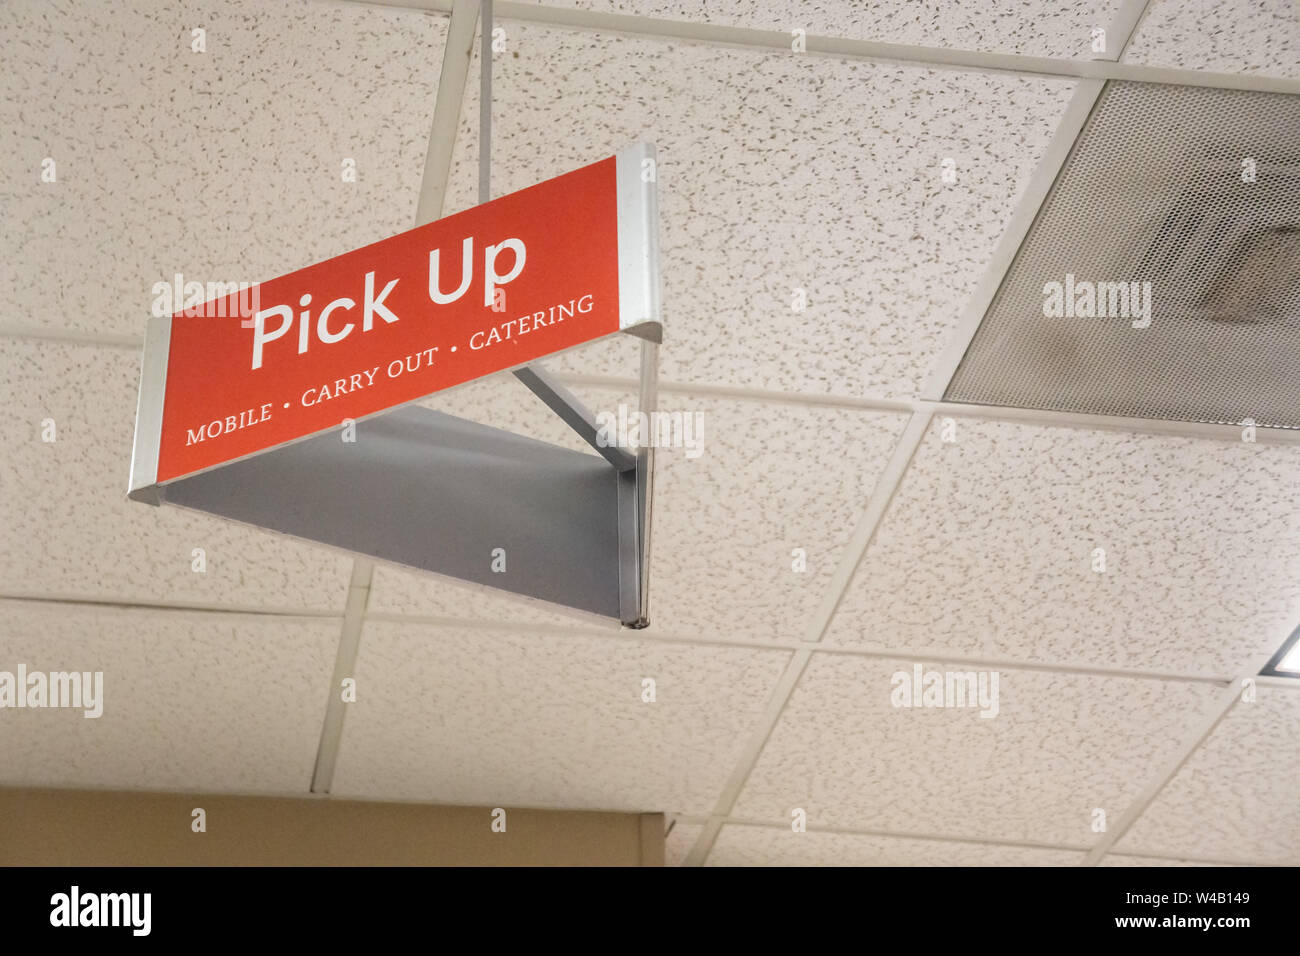 Atlanta, GA - 26. Juli 2019: Red pick up durchführen Zeichen auf Fliesen Decke für mobile App Bestellungen bei Fil - A. Springen die Leitung und Ordnung voraus. Stockfoto